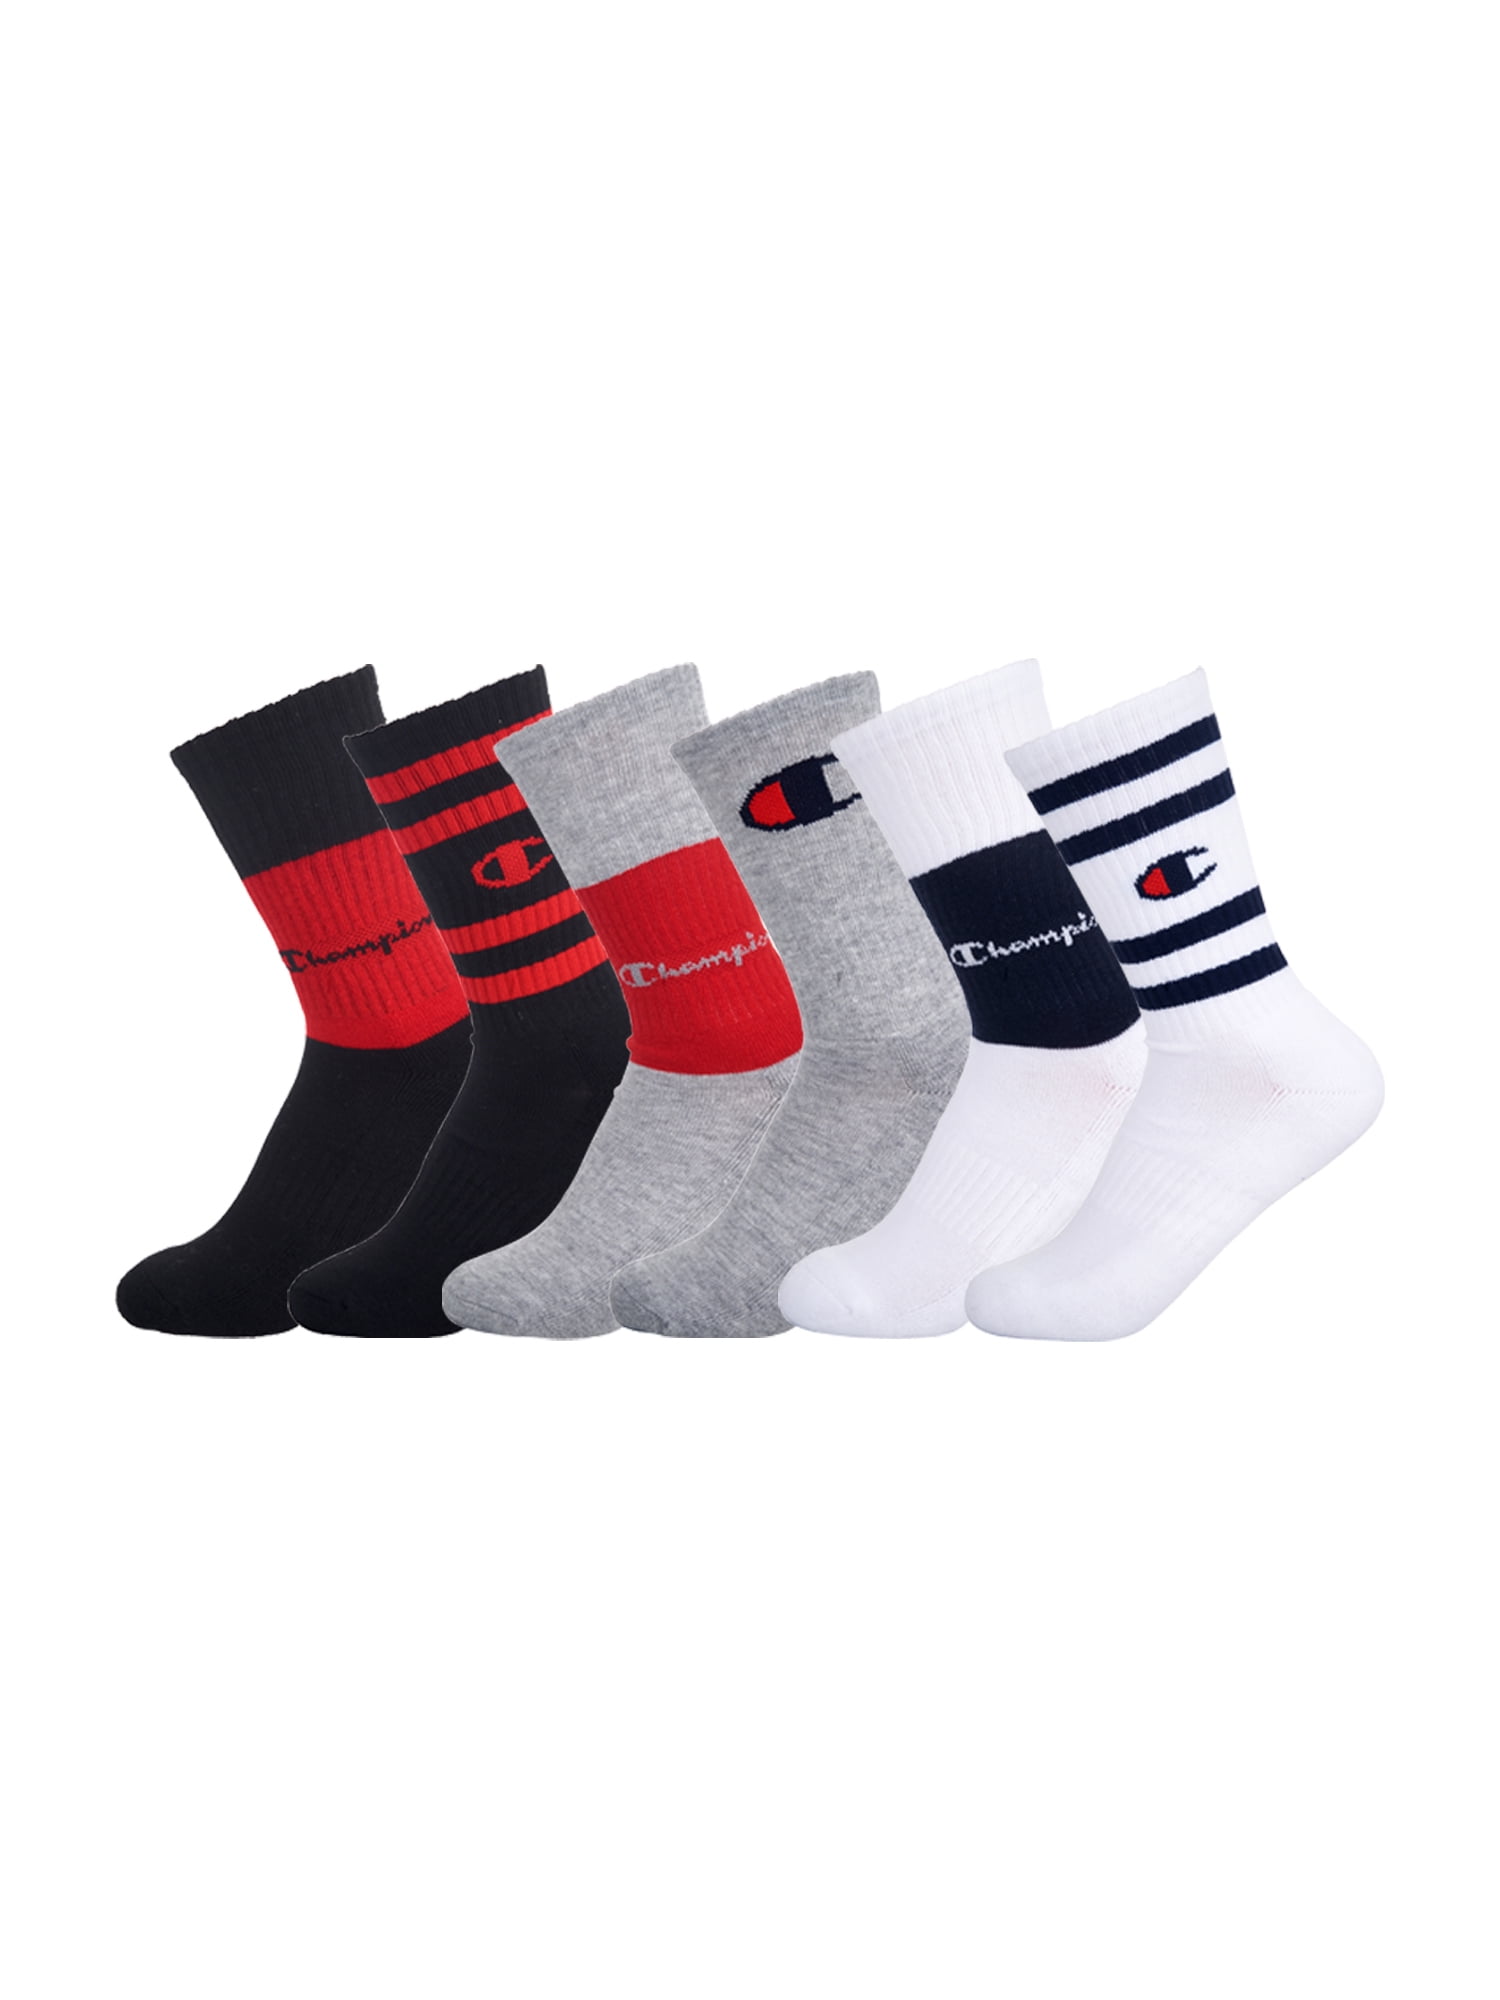 Champion Unisex Socks, 6 Pack Crew Socks, 7 Sizes - 11